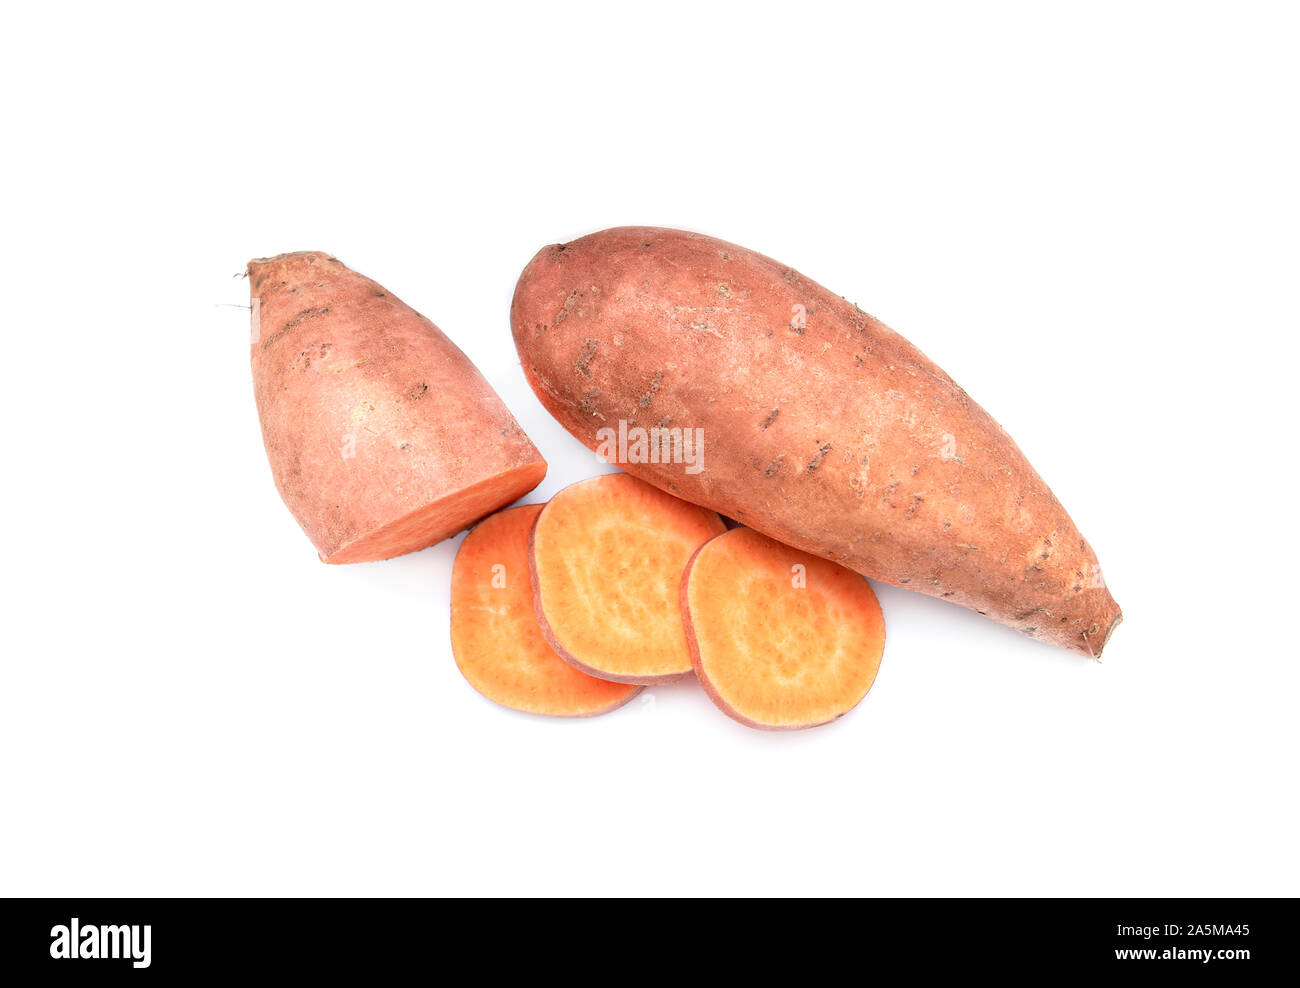 Sweet Potato, Potatoes, Potato yam or Ipomoea Batatas isolated on white Background Stock Photo